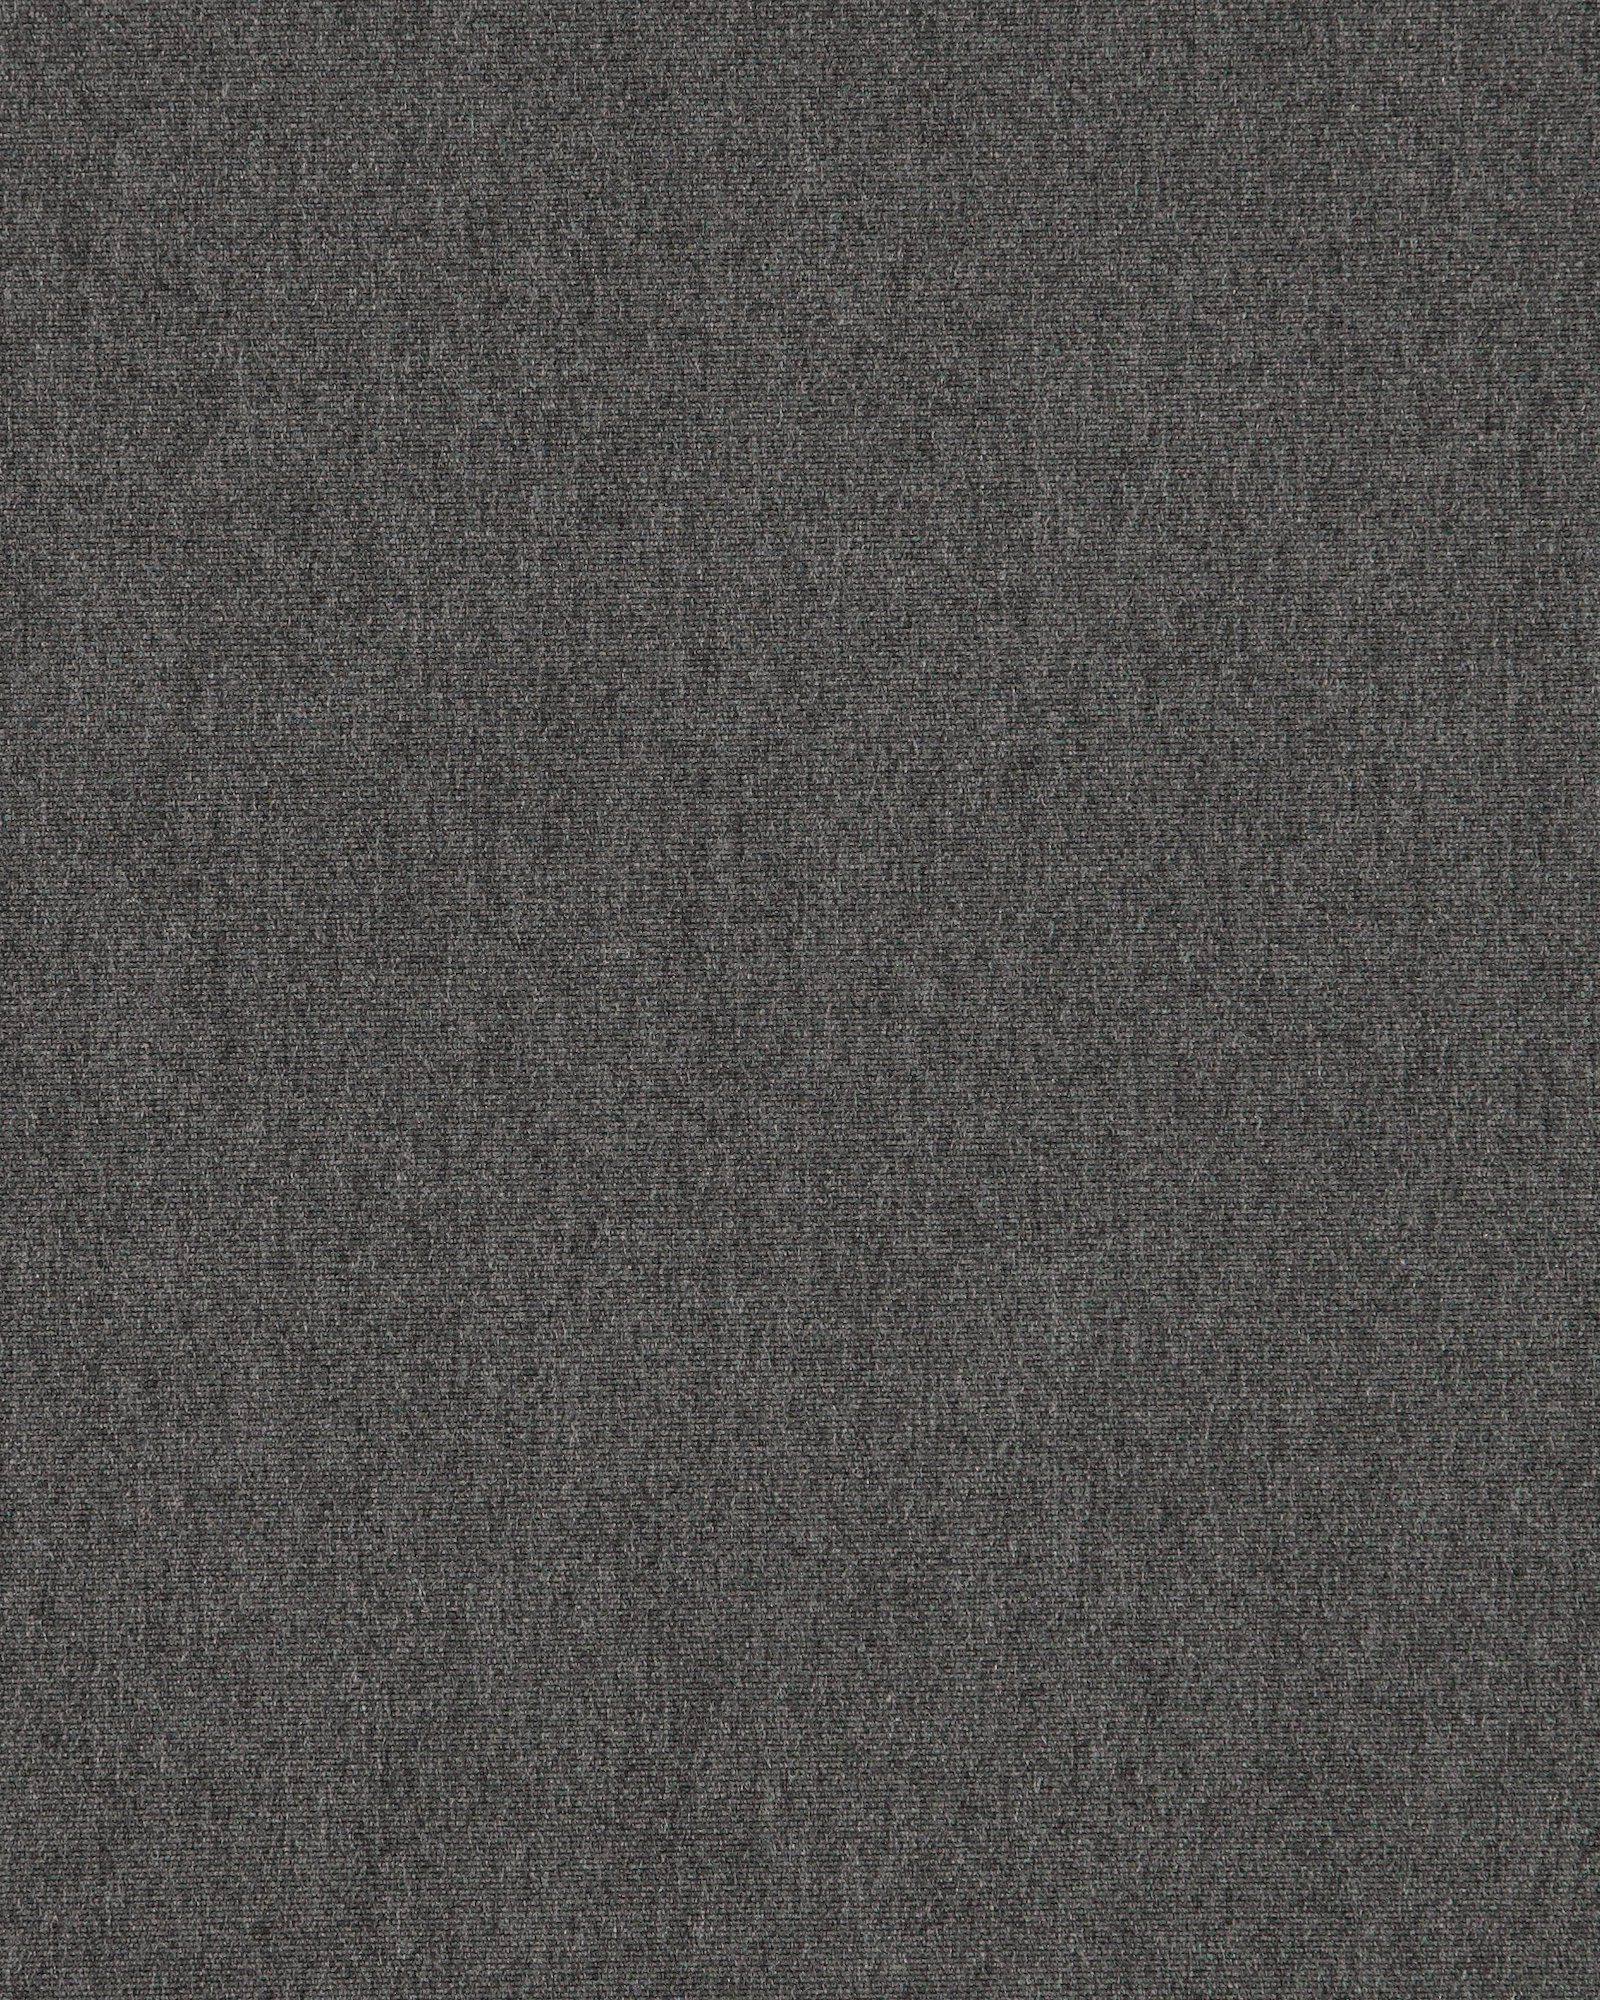 Markise/altan mørk grå garnfarvet 823536_pack